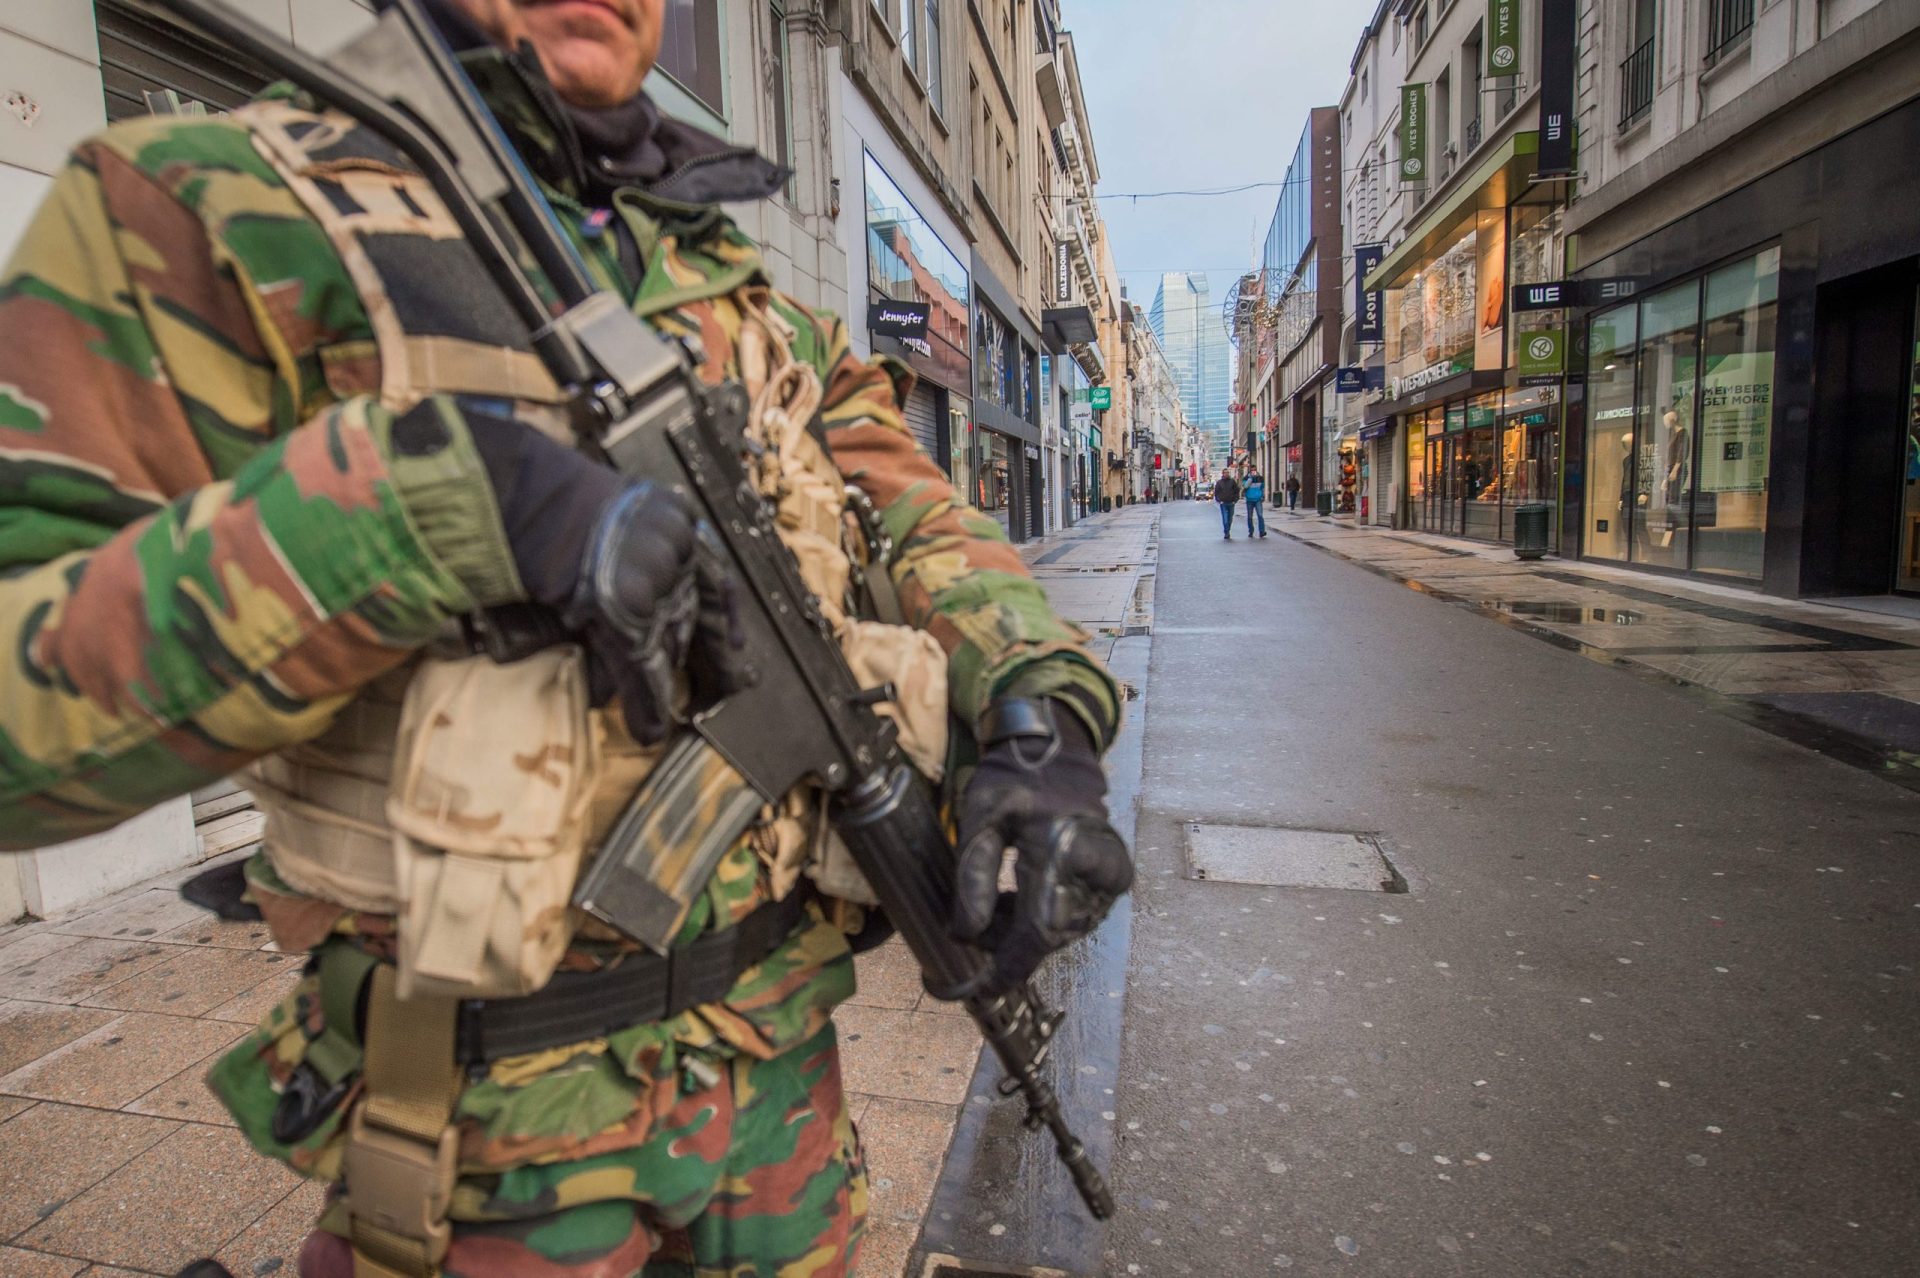 Atentados: Bruxelas continua em alerta máximo